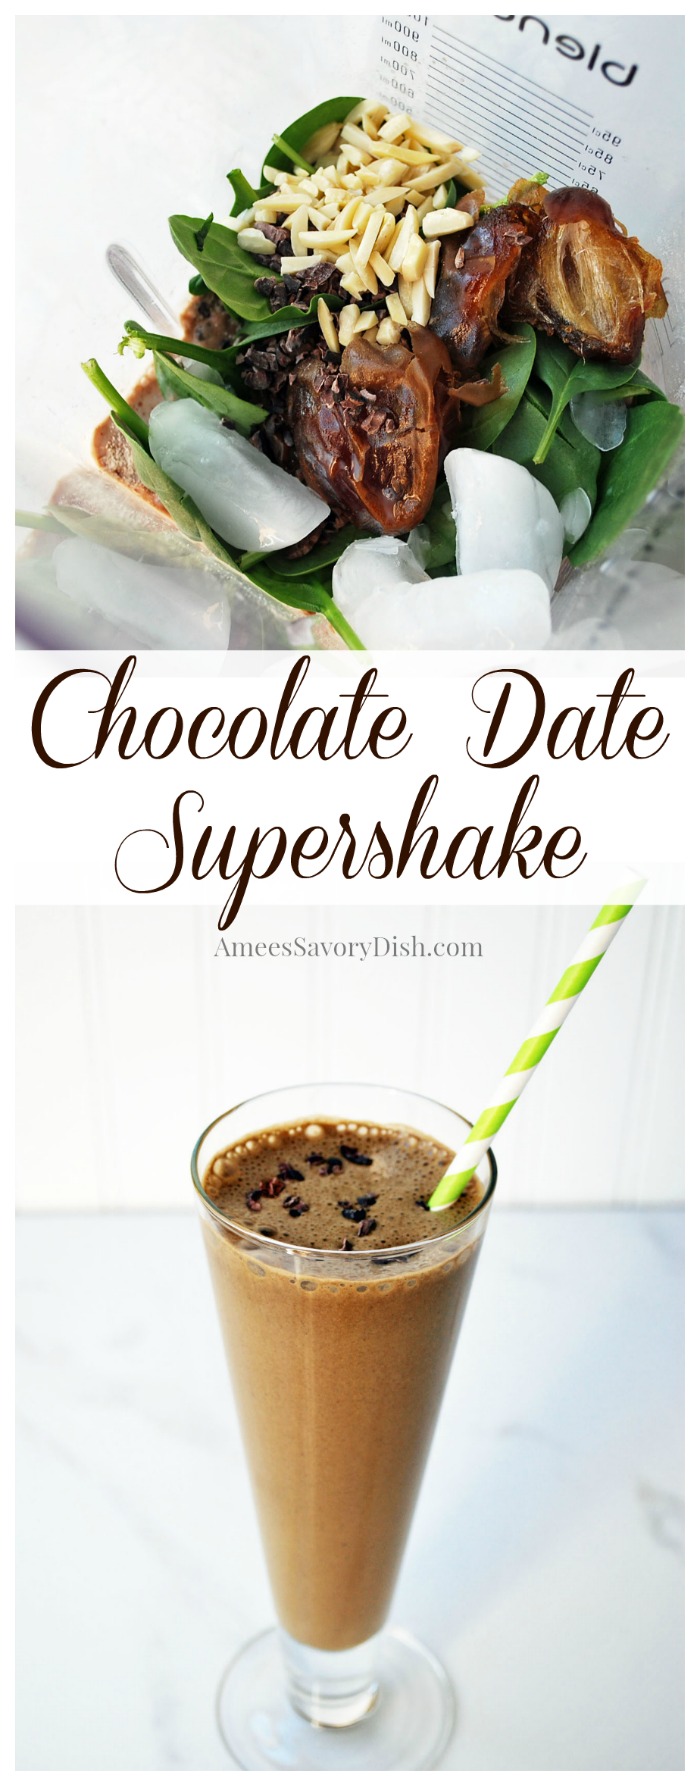 Chocolate Date Supershake 